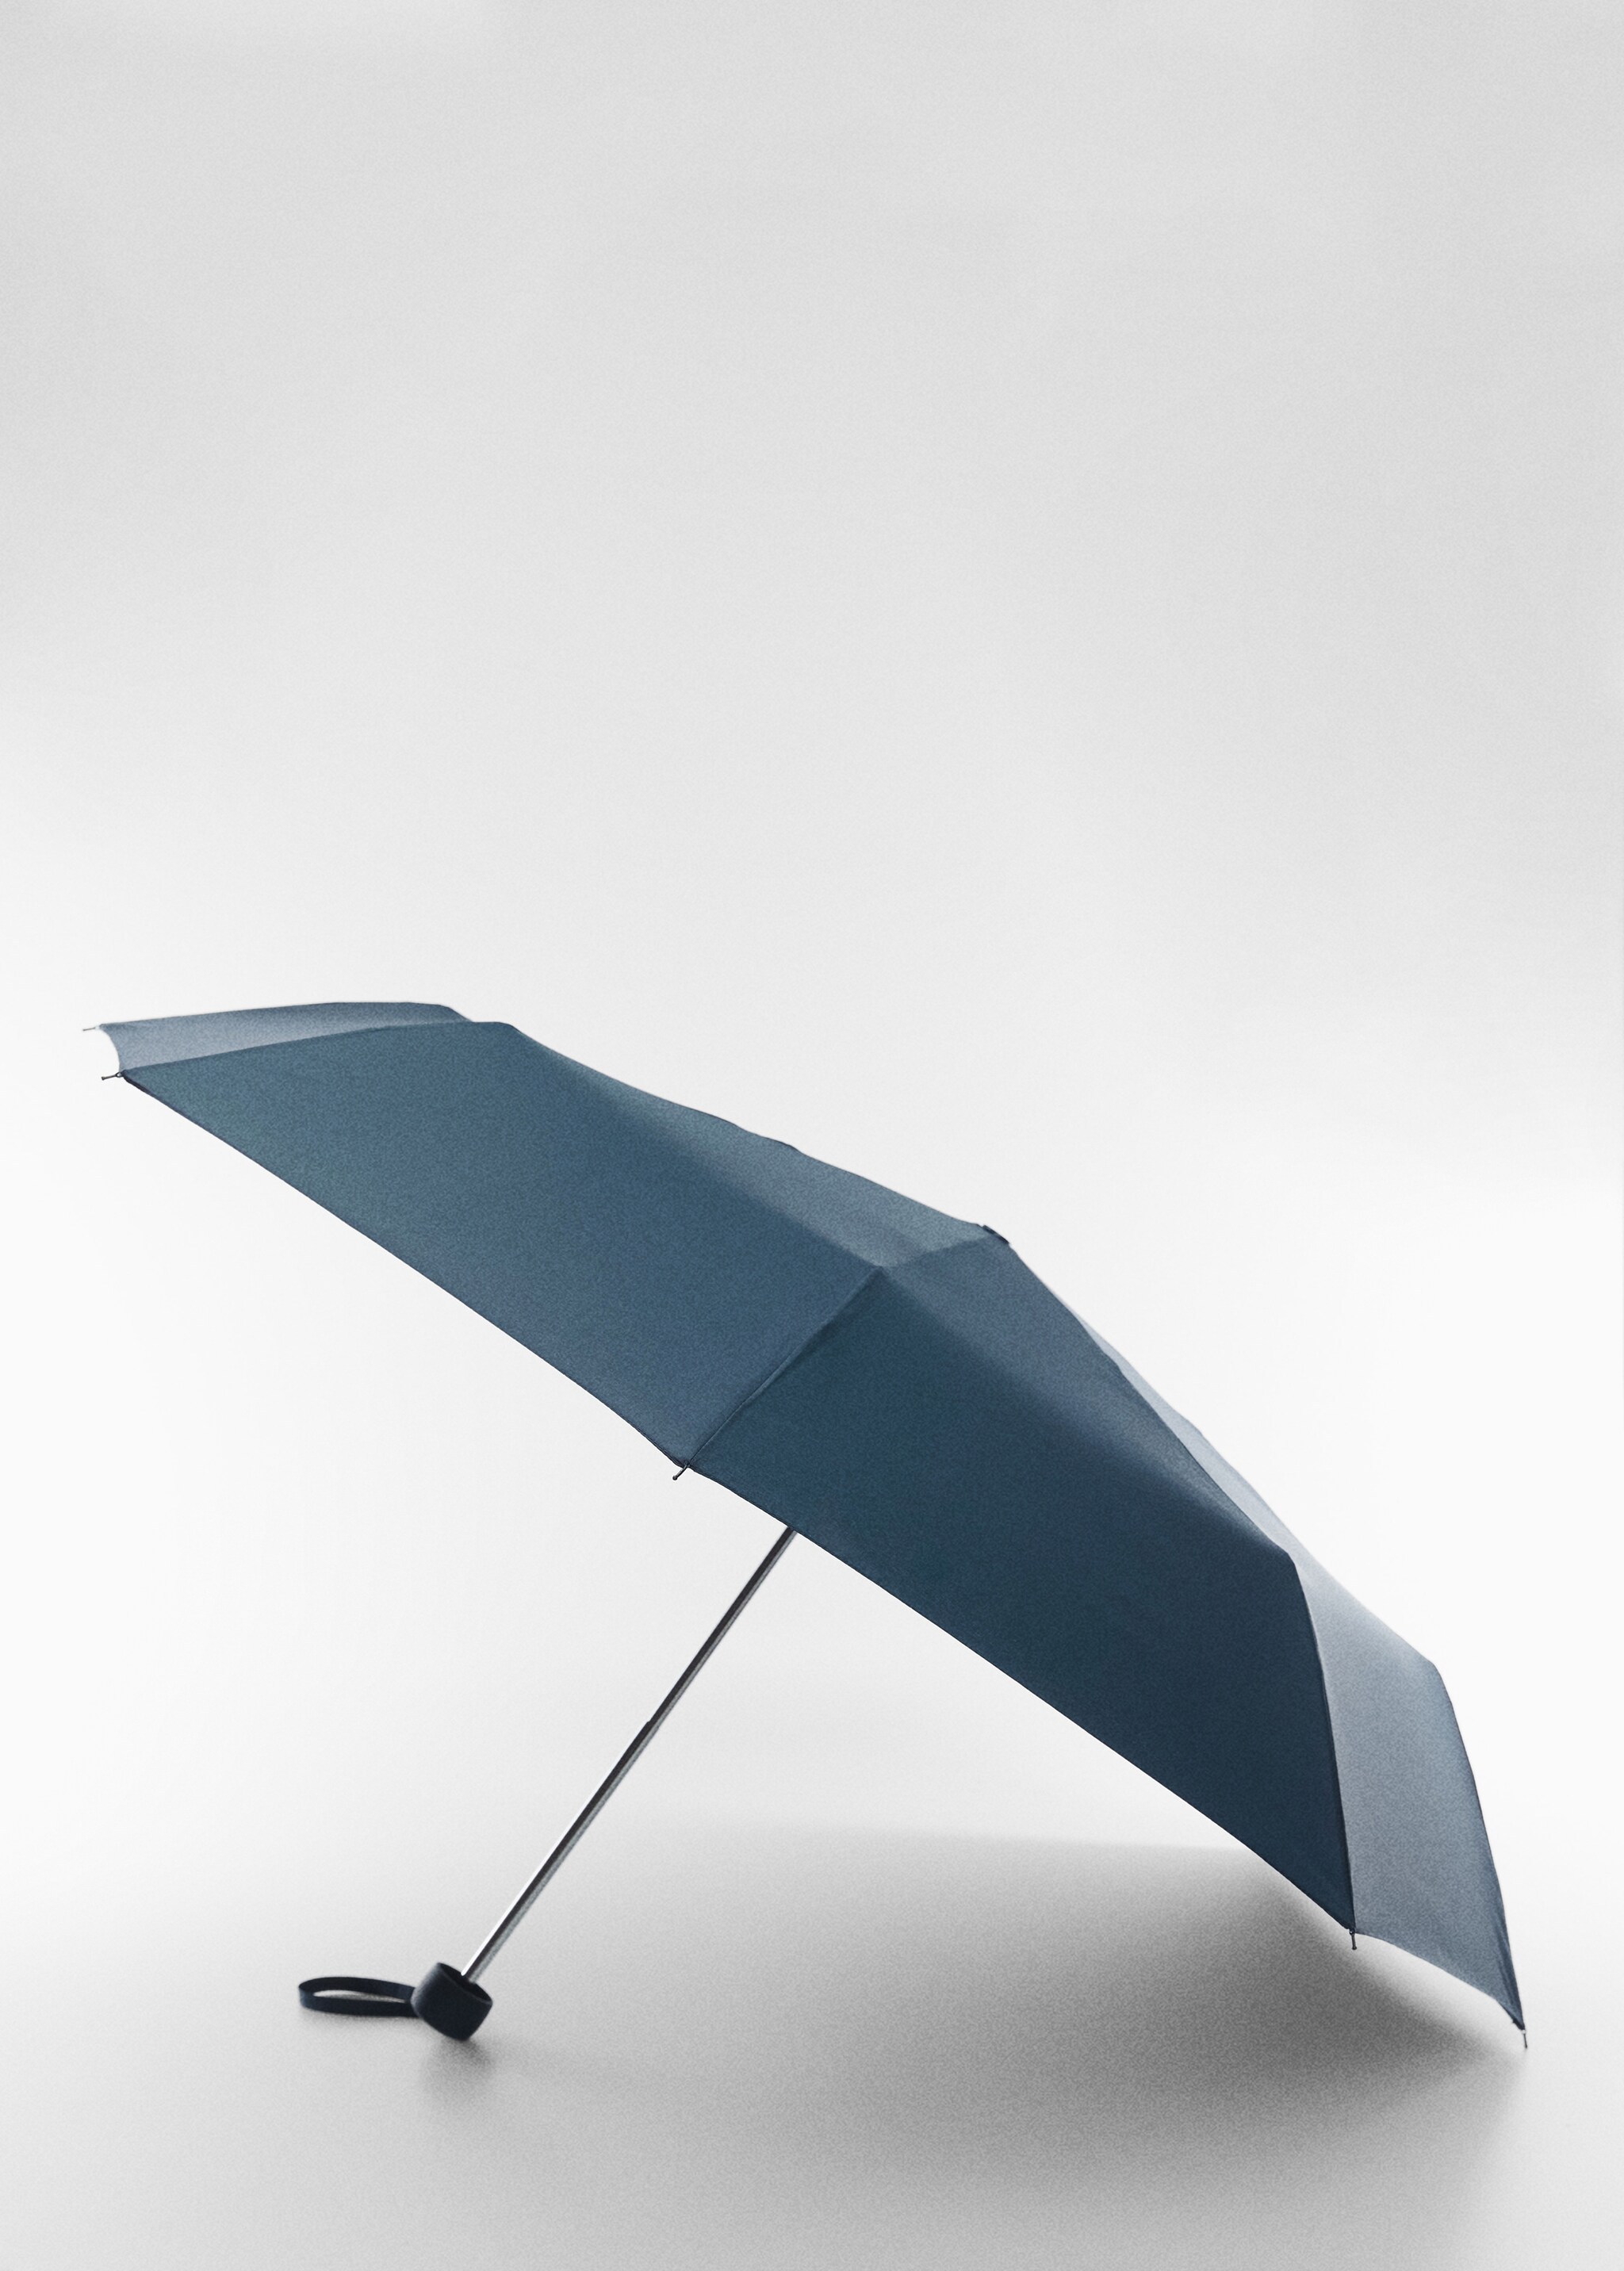 Gładki składany parasol - Plan średni